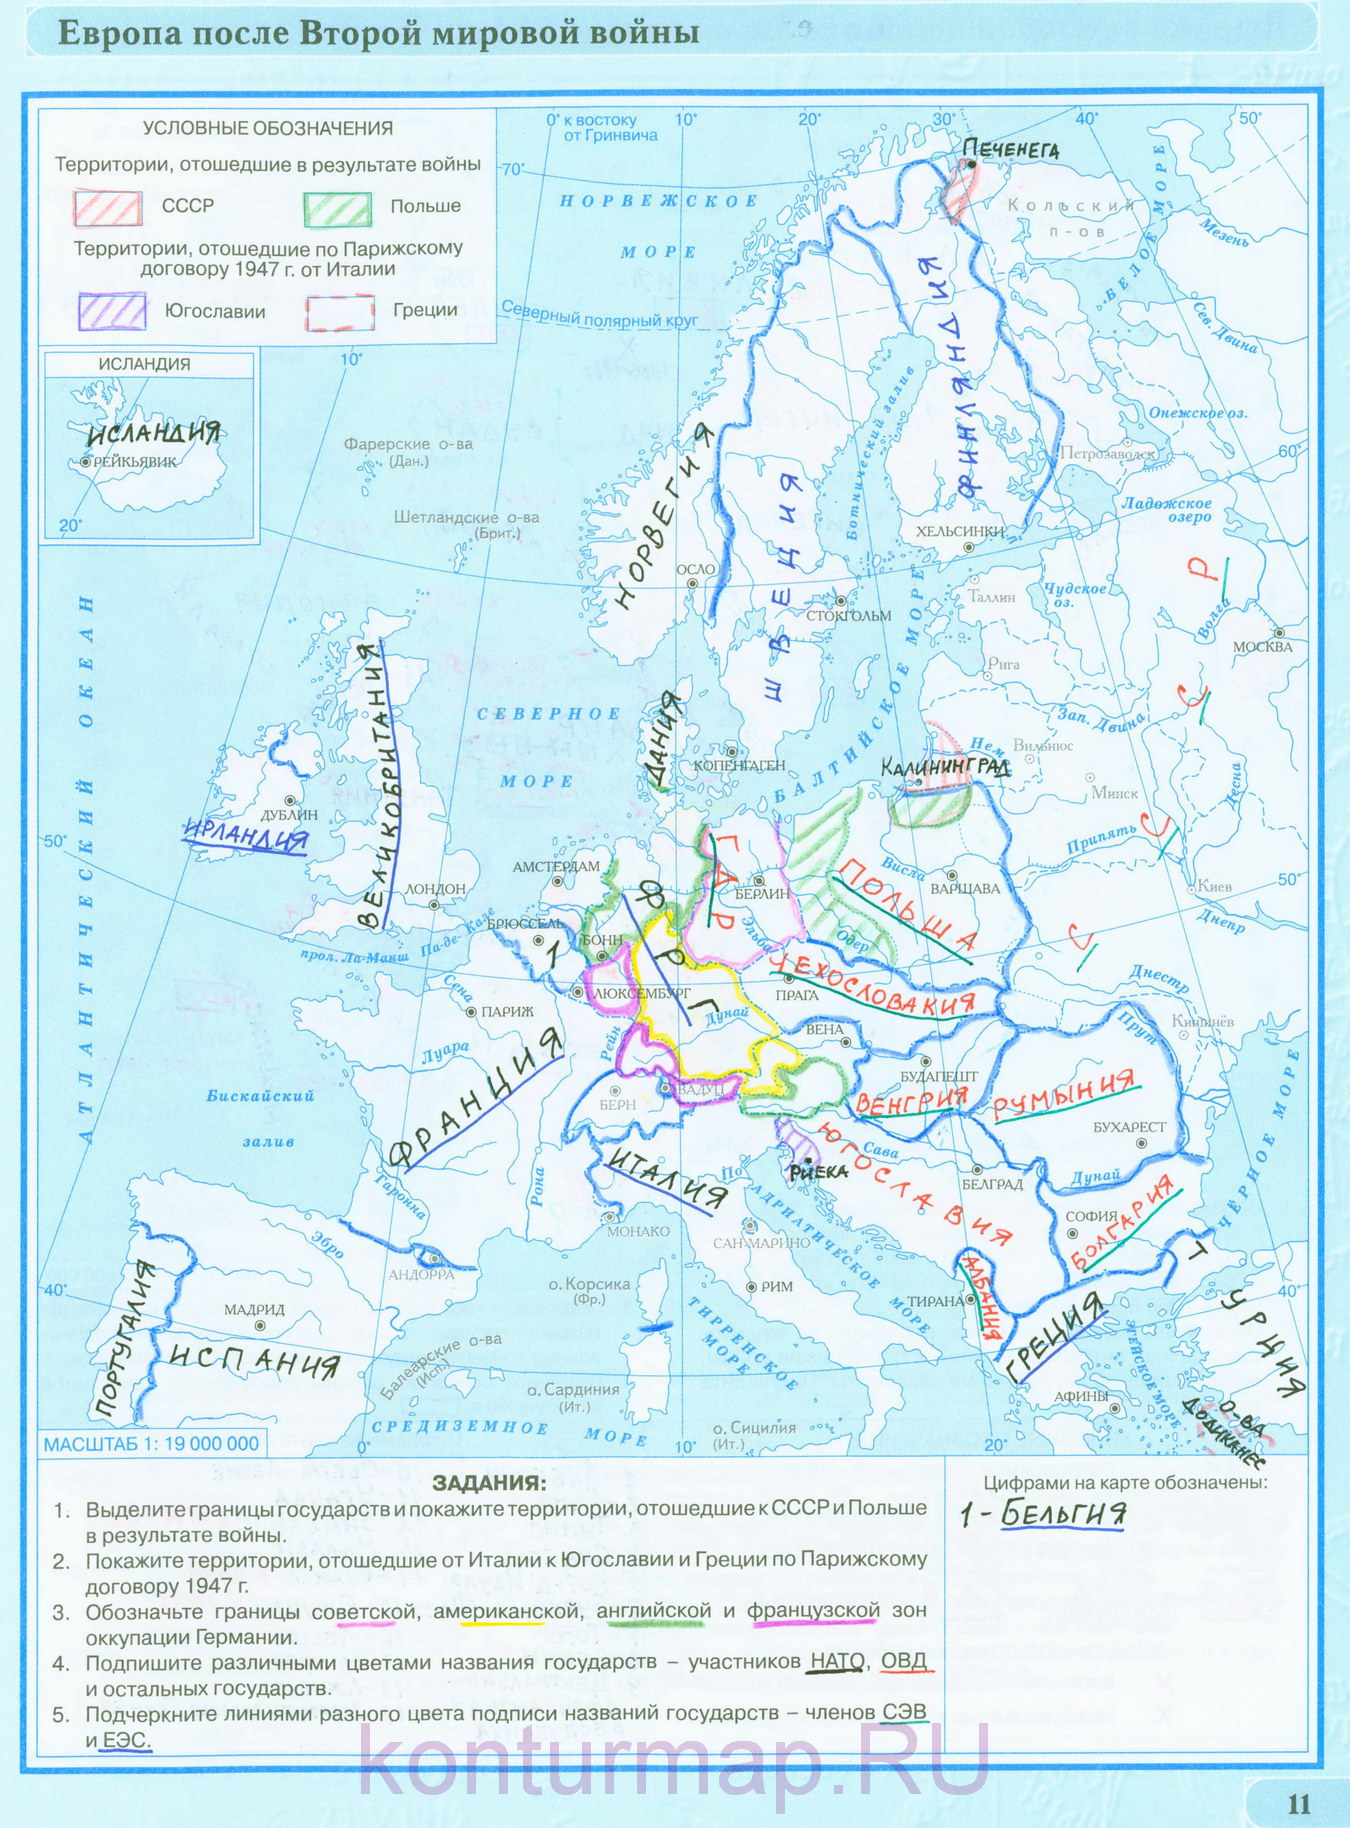 Всемирная история 11 класс щупак контурная карта стран европы